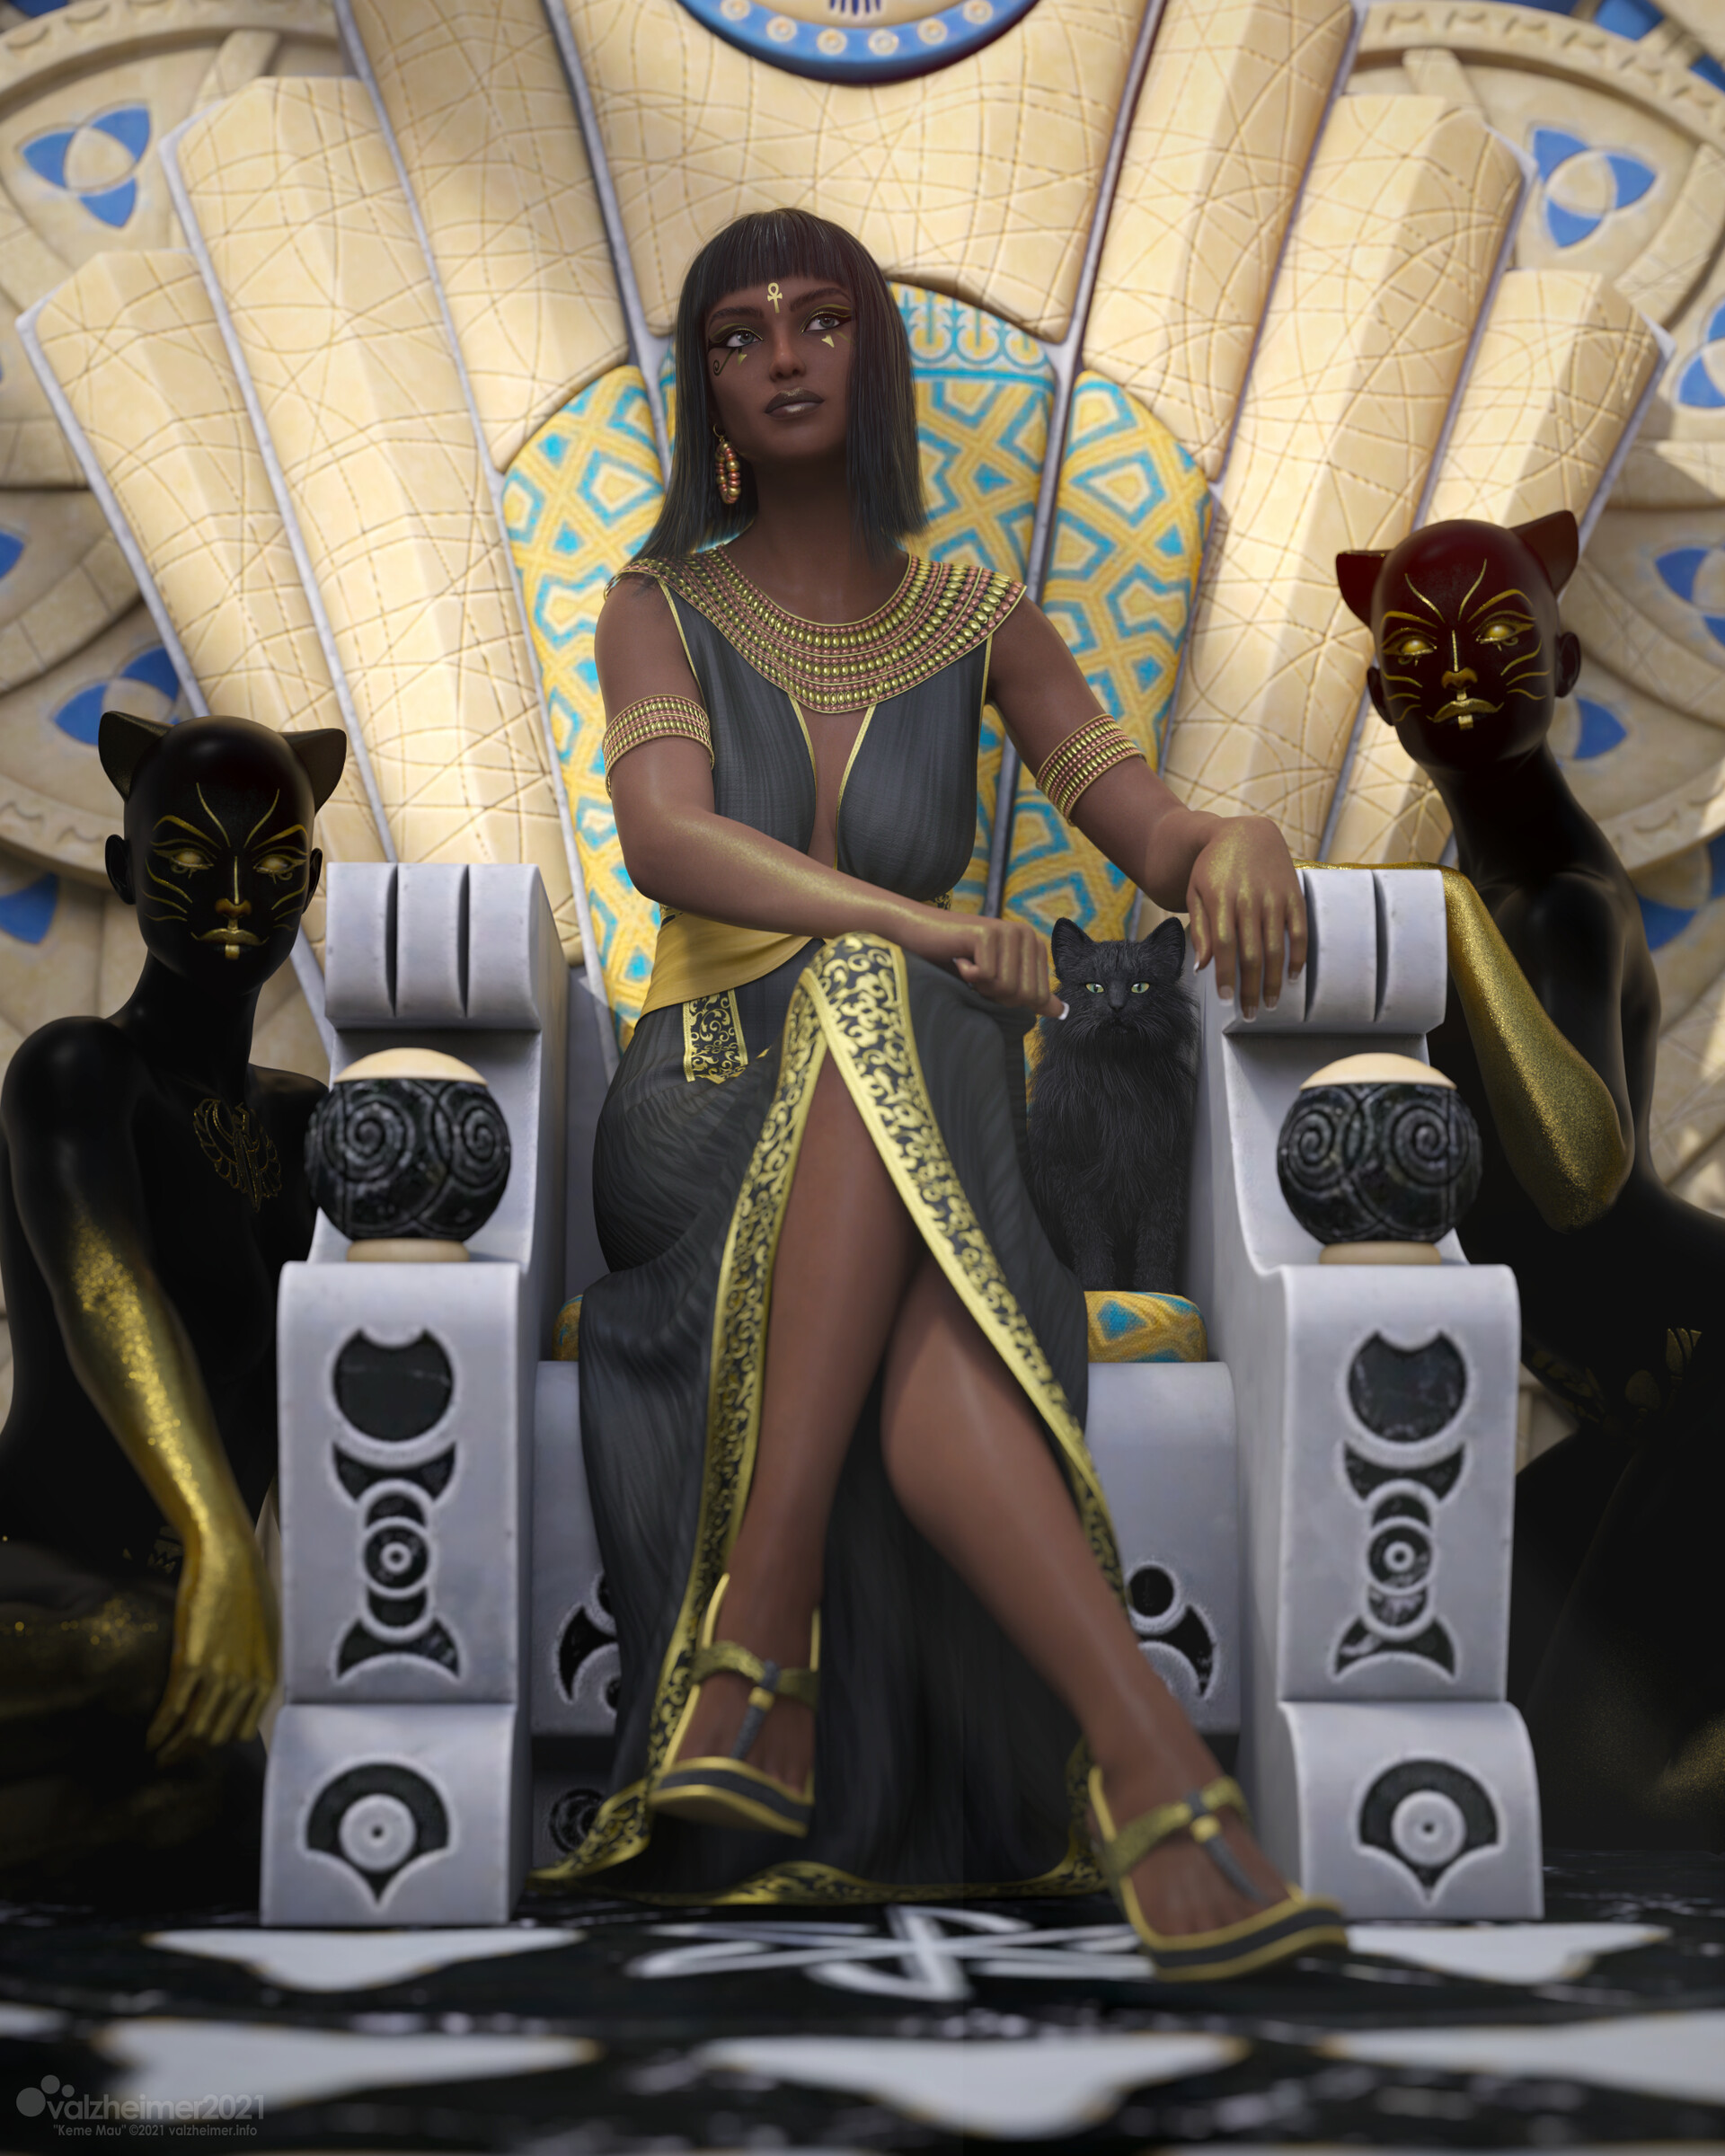 General 1920x2400 Verica Hupe fantasy art fantasy girl legs legs crossed sitting women digital art Egyptian mythology